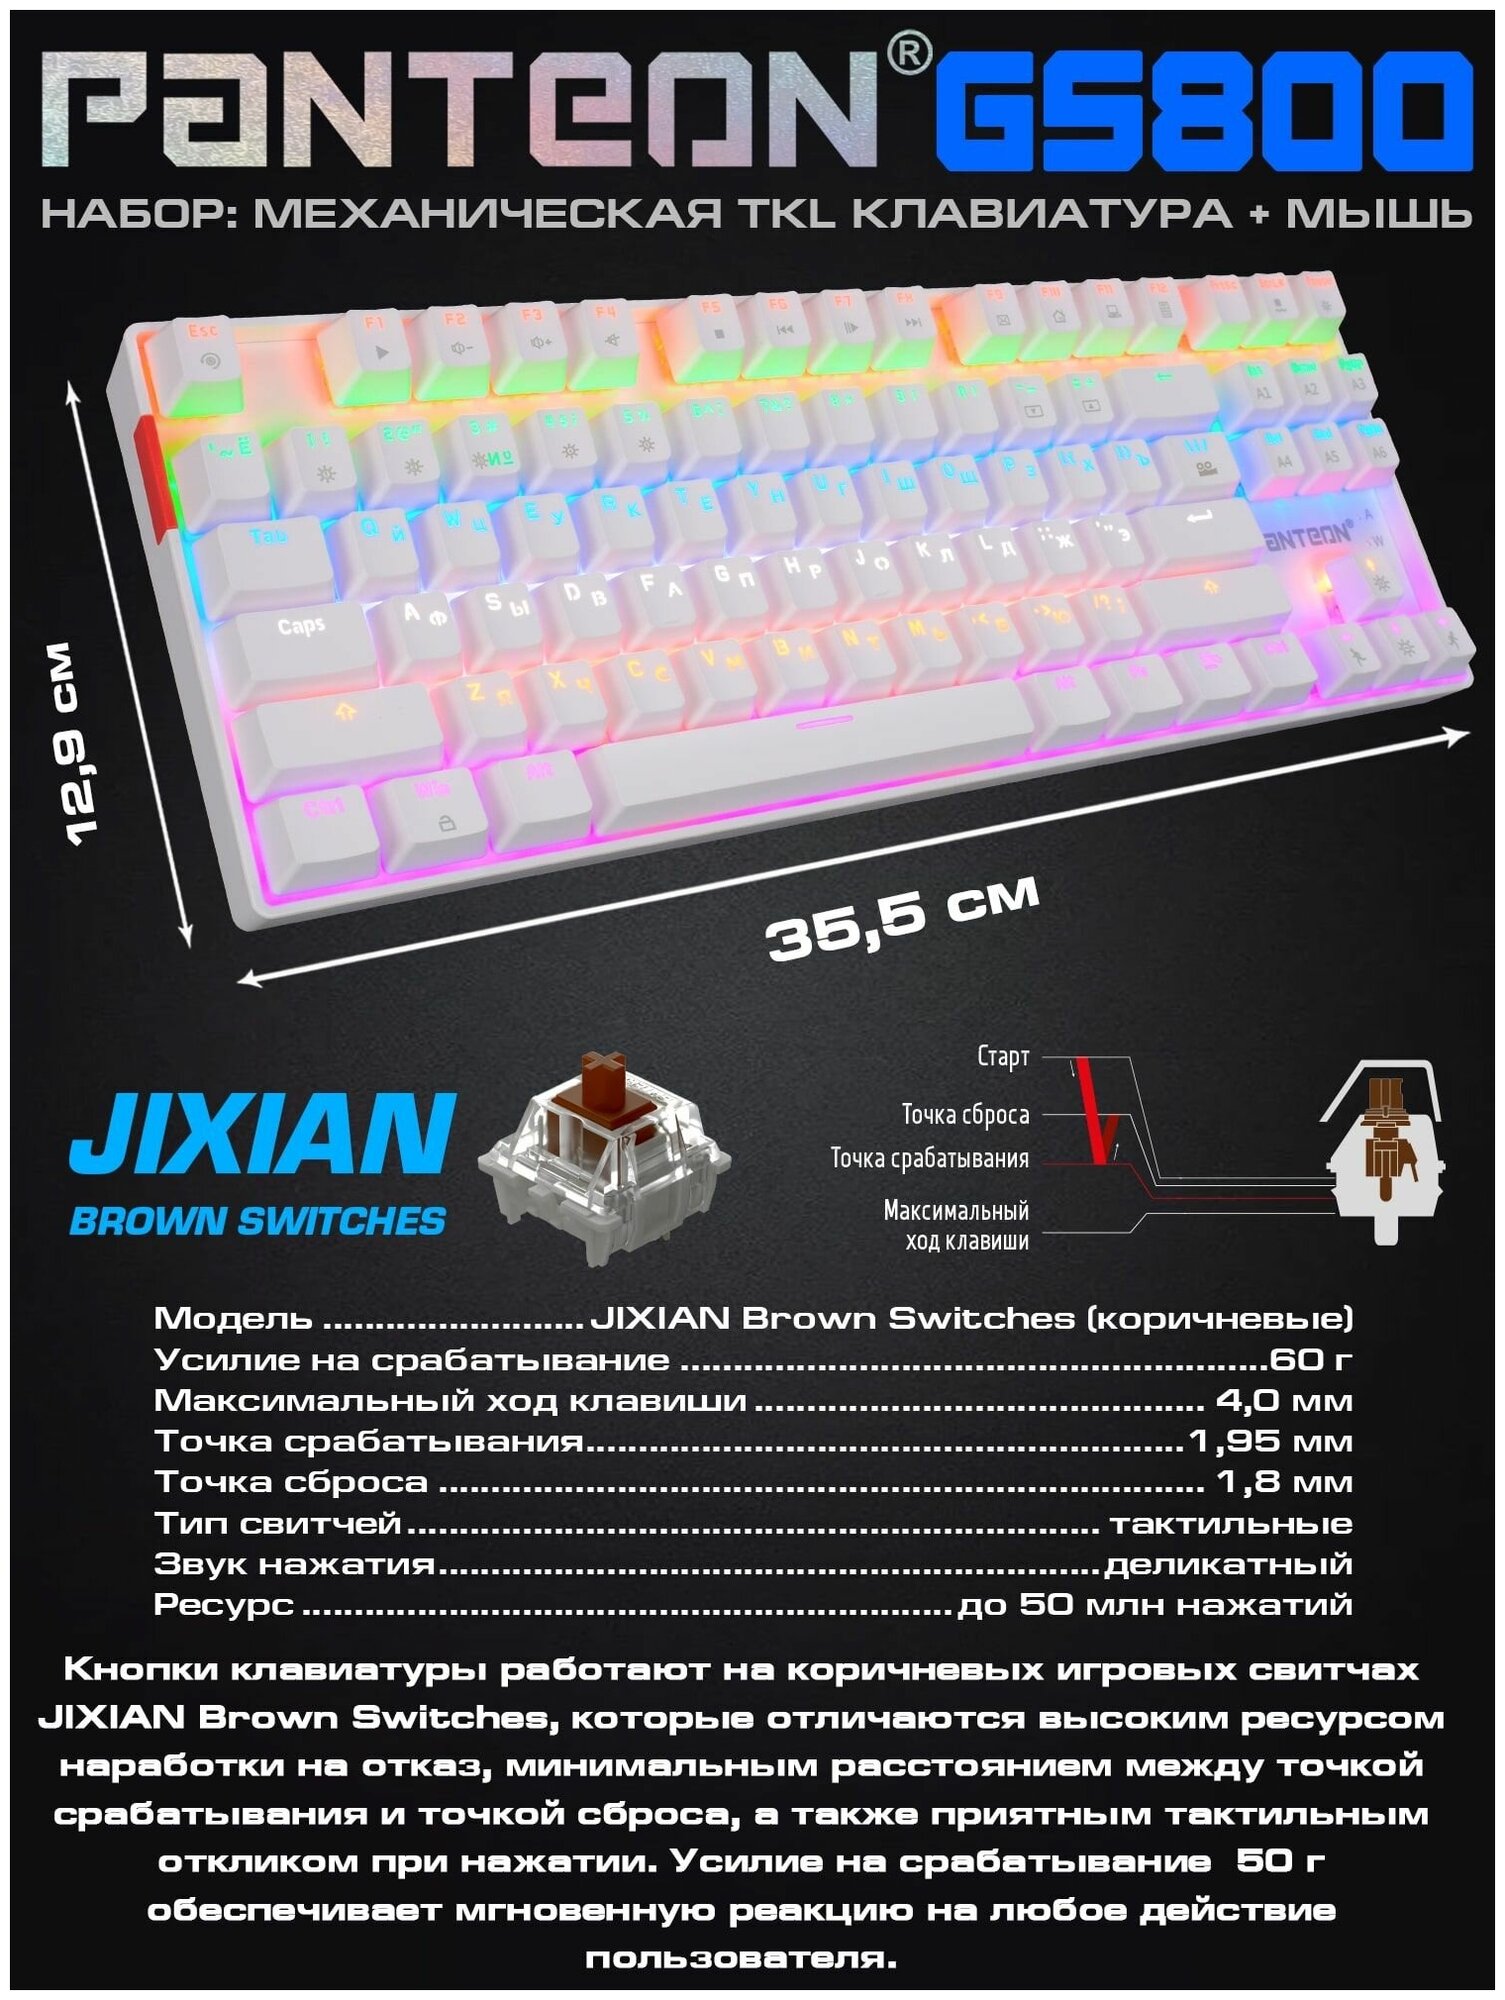 Игровая механическая клавиатура + мышь JETACCESS PANTEON GS800